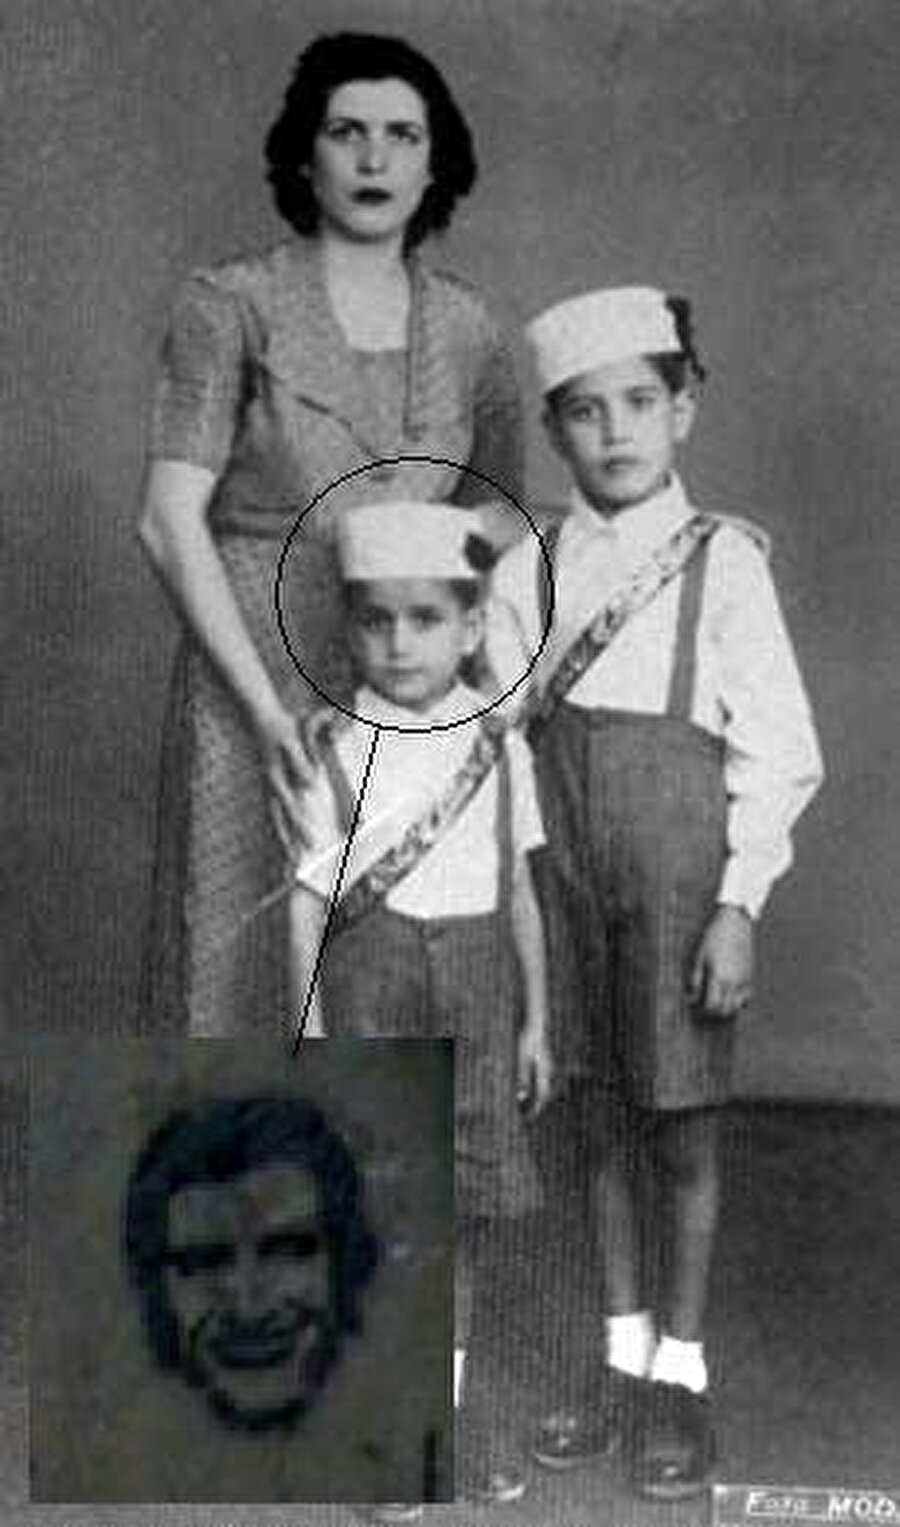 1944 yılında İstanbul Küçükpazar’da 3 kardeşin en büyüğü olarak dünyaya gelir. 

                                    
                                    
                                    
                                    
                                    
                                    
                                
                                
                                
                                
                                
                                